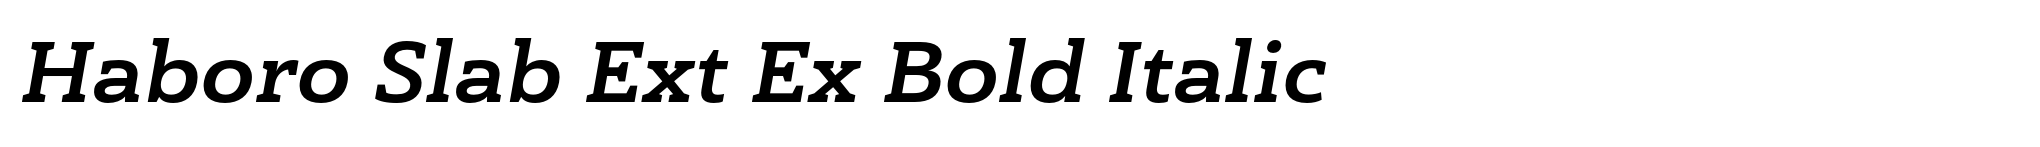 Haboro Slab Ext Ex Bold Italic image